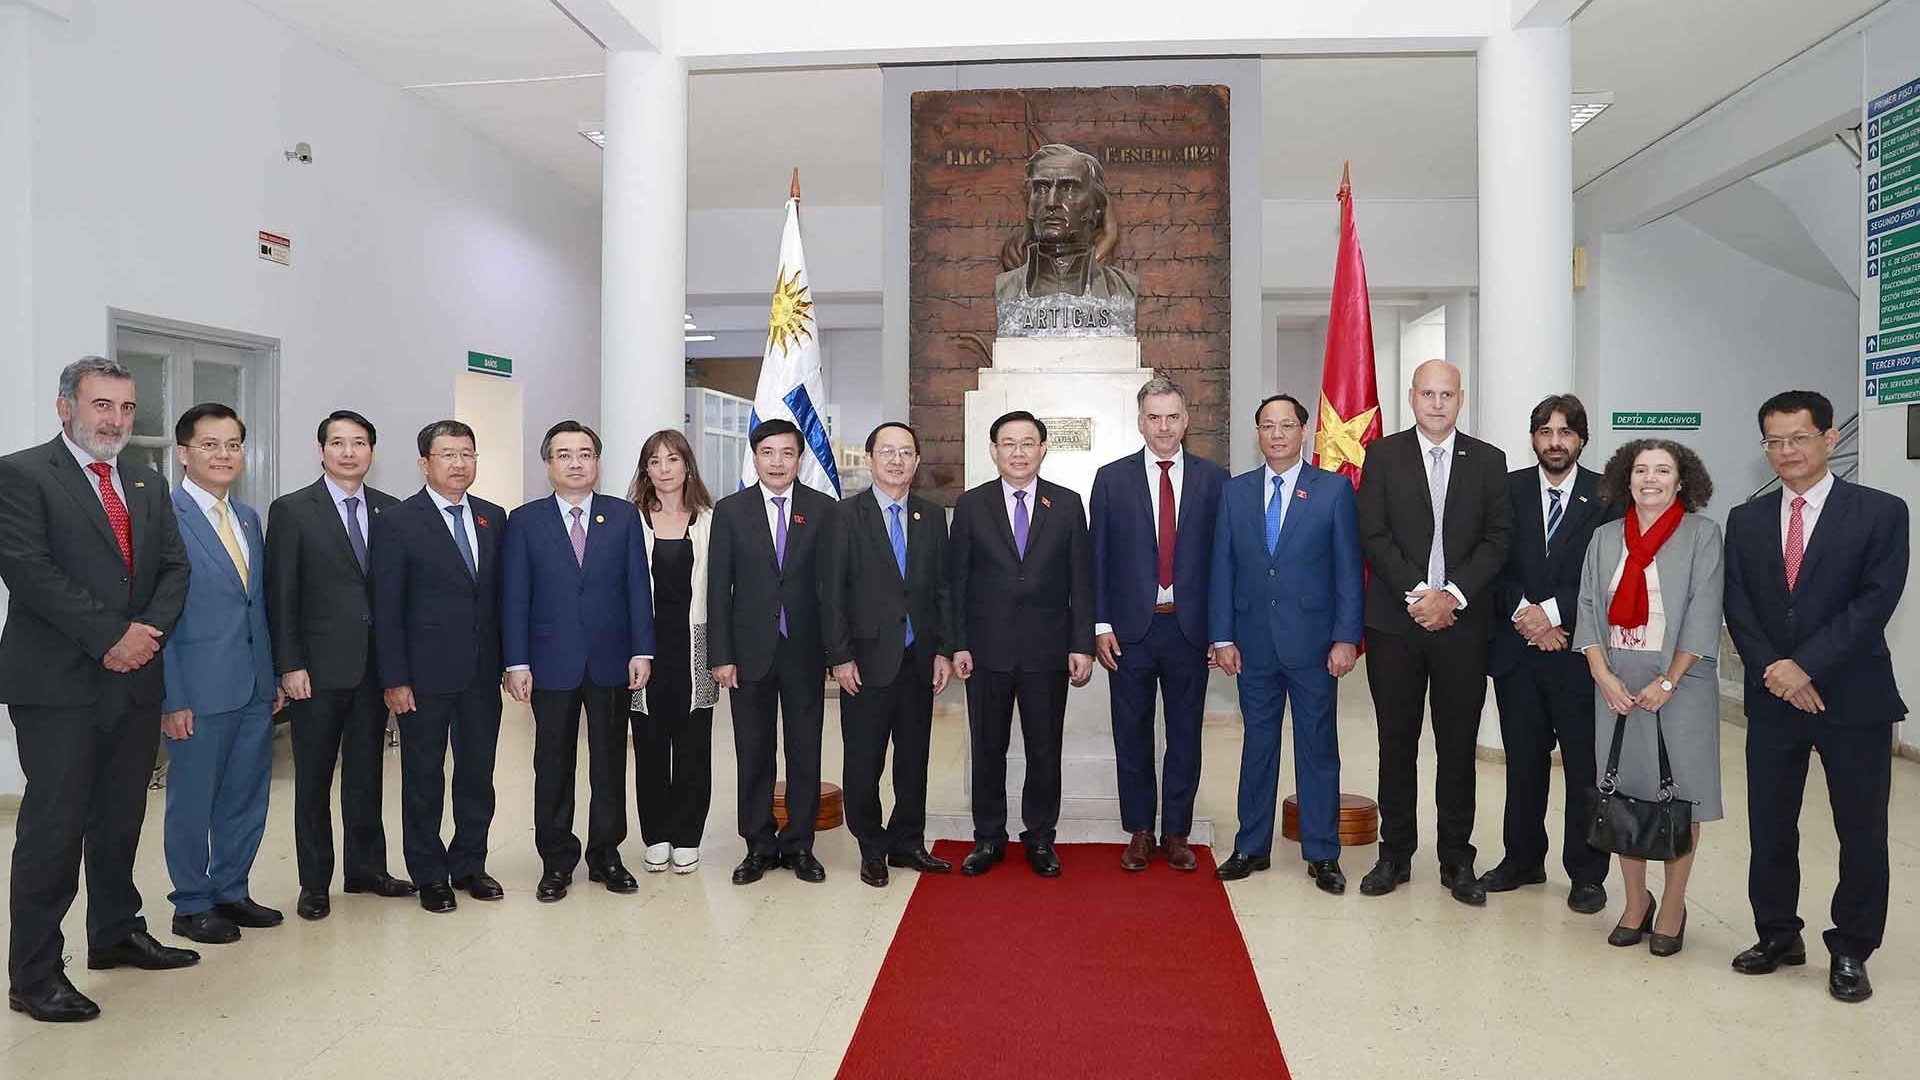 Tỉnh Canelones, Uruguay mong muốn tăng cường hợp tác với các địa phương Việt Nam